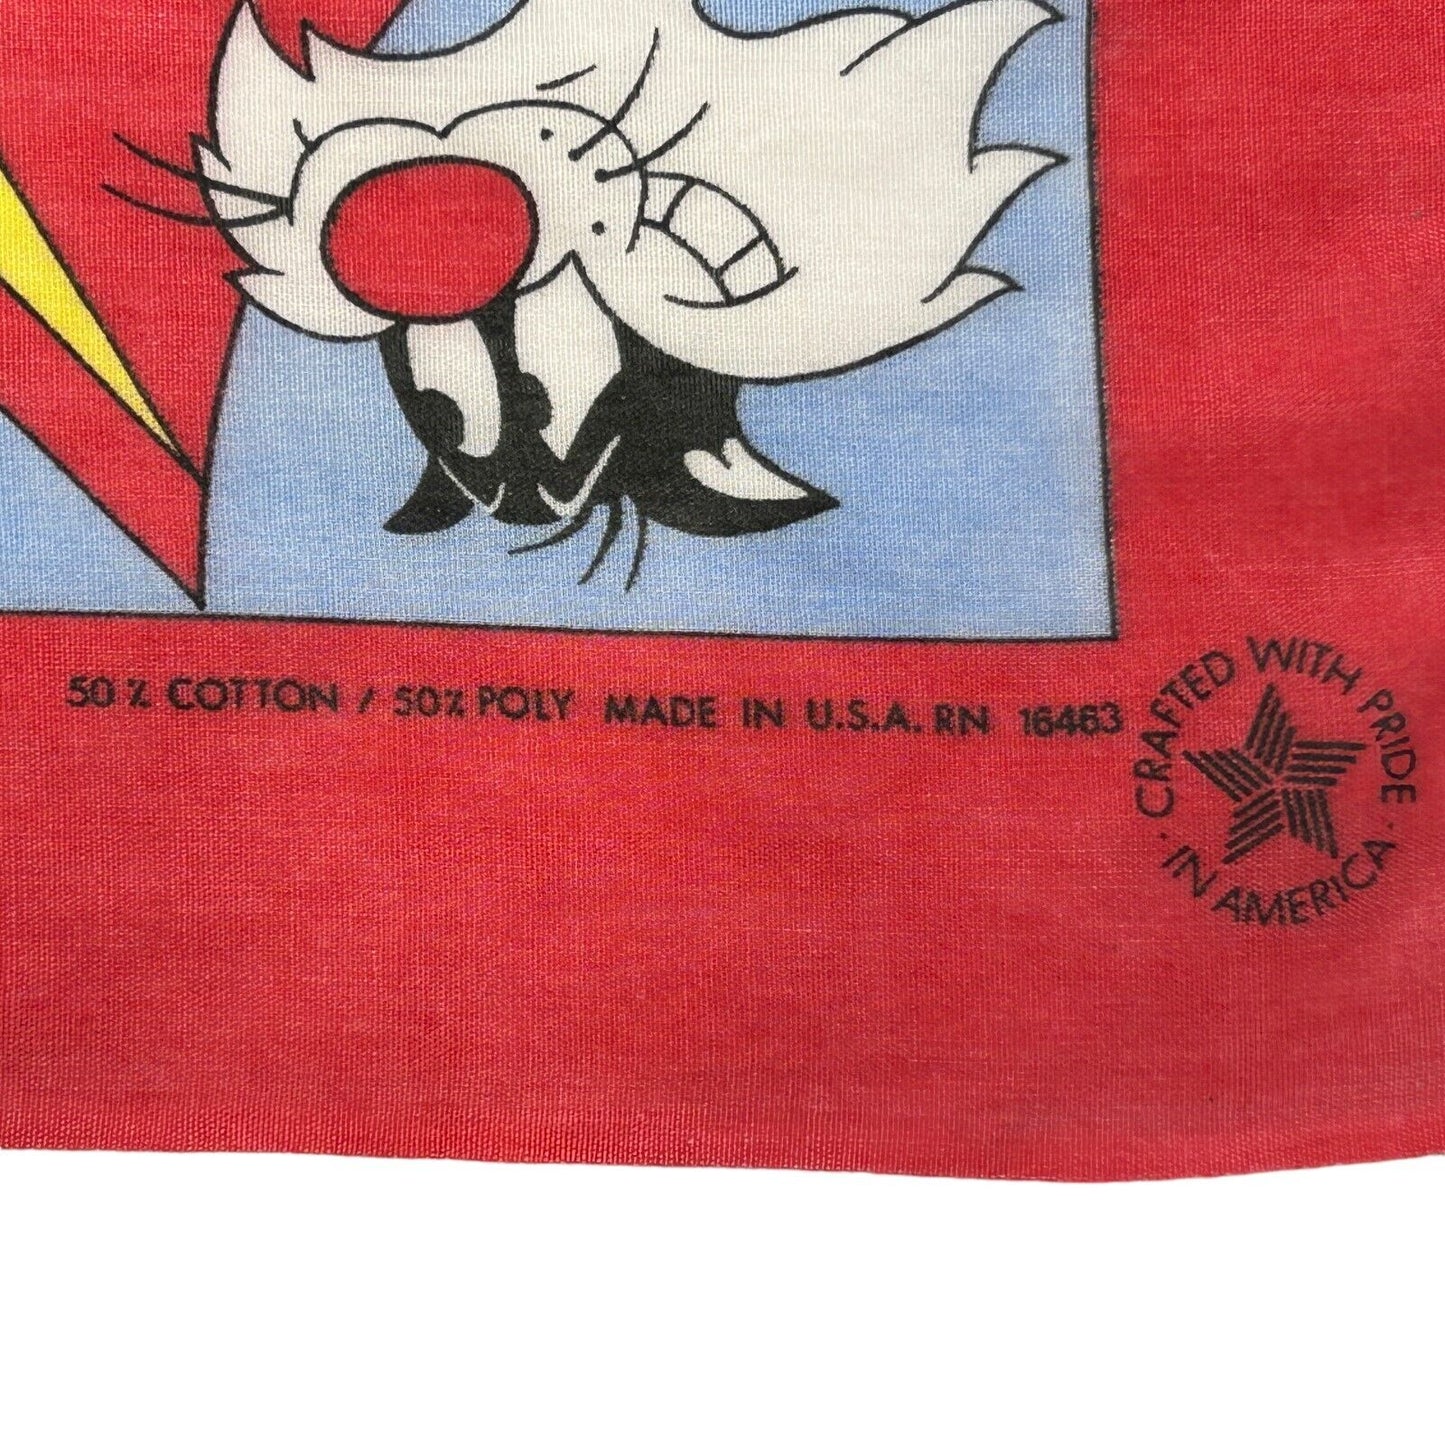 Tweety Bird Looney Tunes Bandana Handkerchief Vintage 80s Warner Bros USA Made